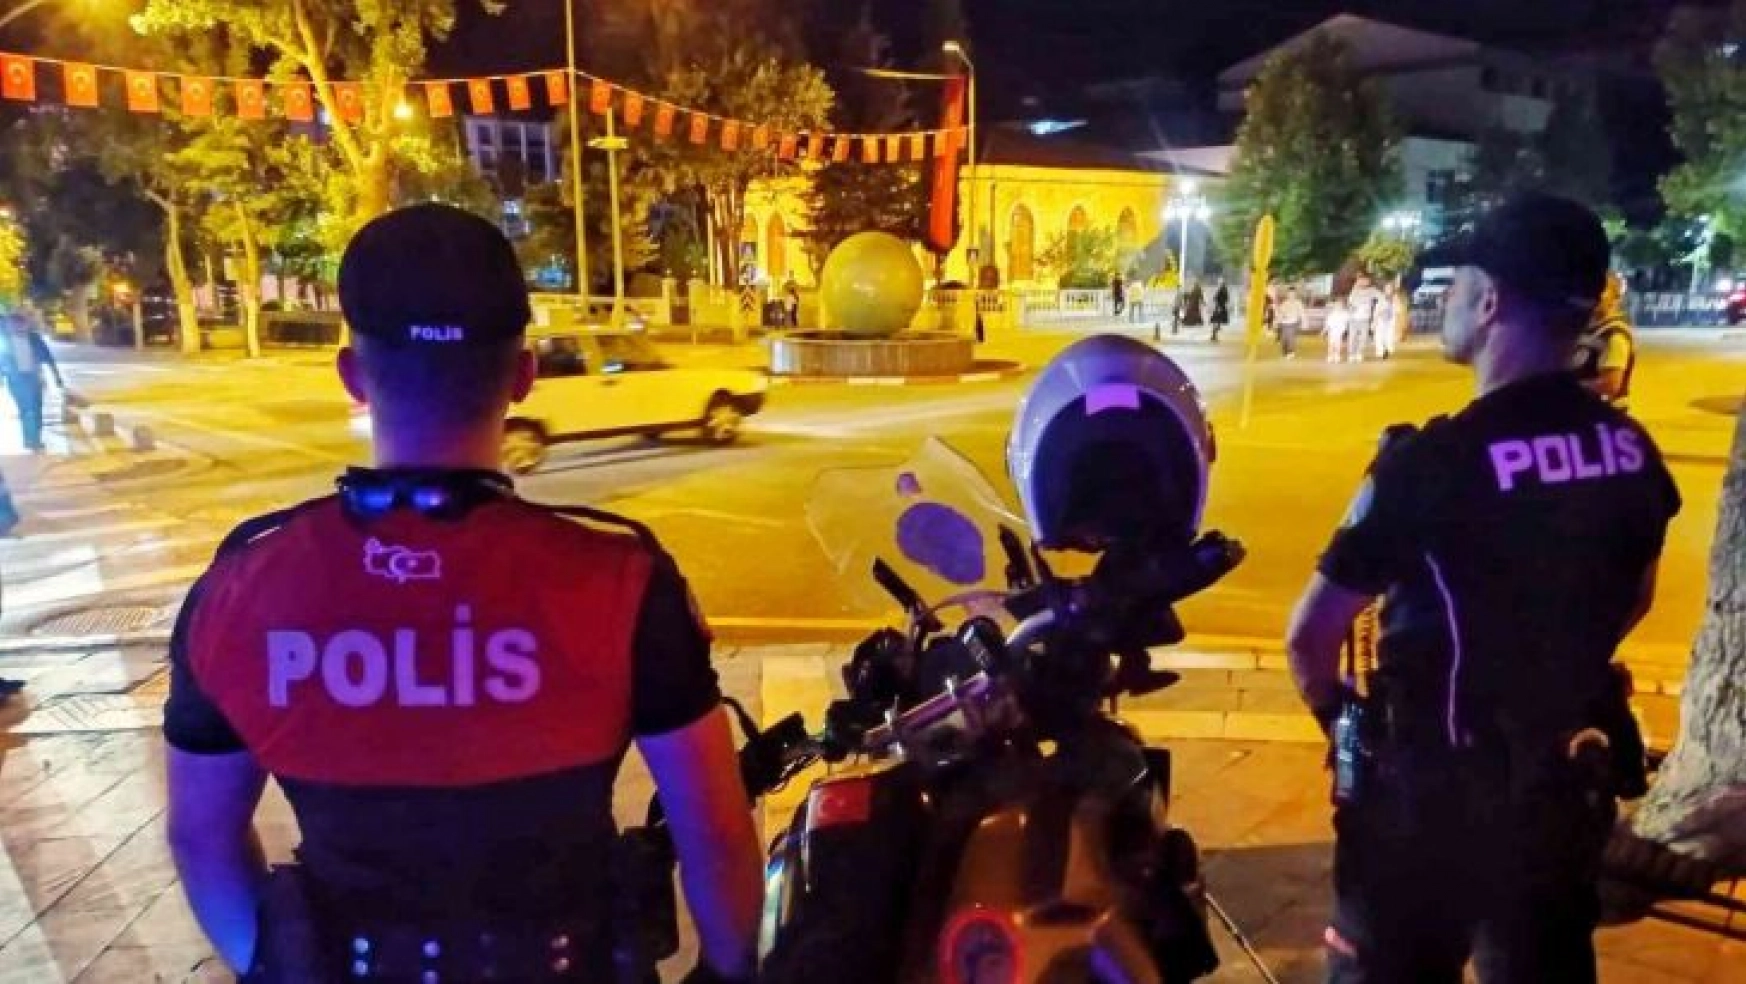 Malatya'da polis denetimleri arttırdı